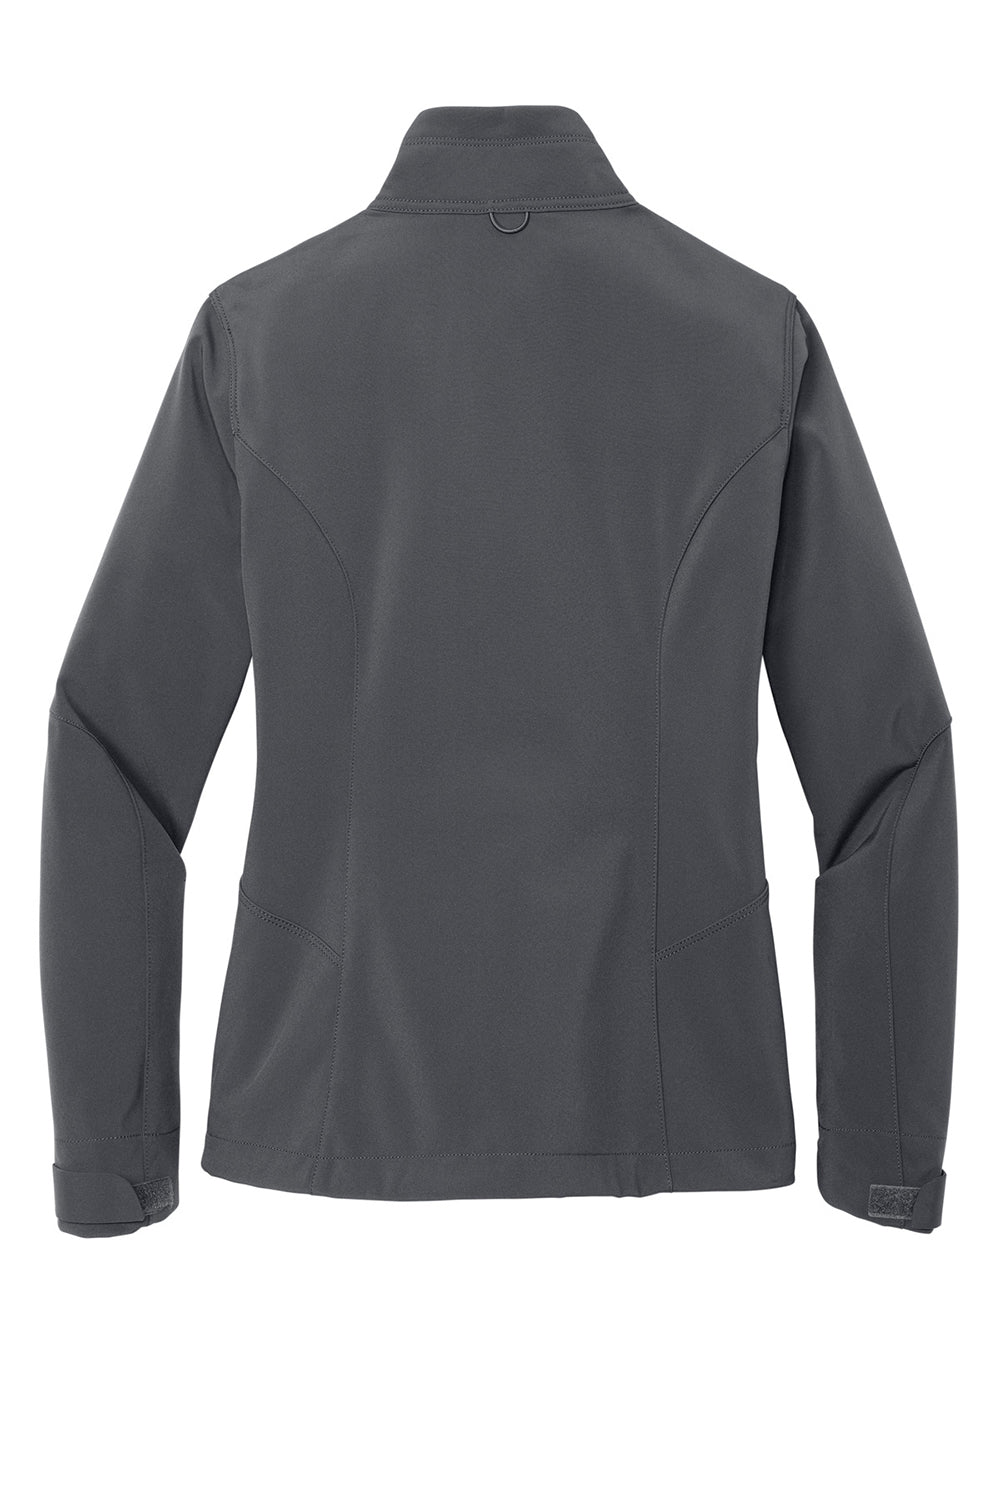 Eddie Bauer EB531 Womens Water Resistant Full Zip Jacket Steel Grey Flat Back